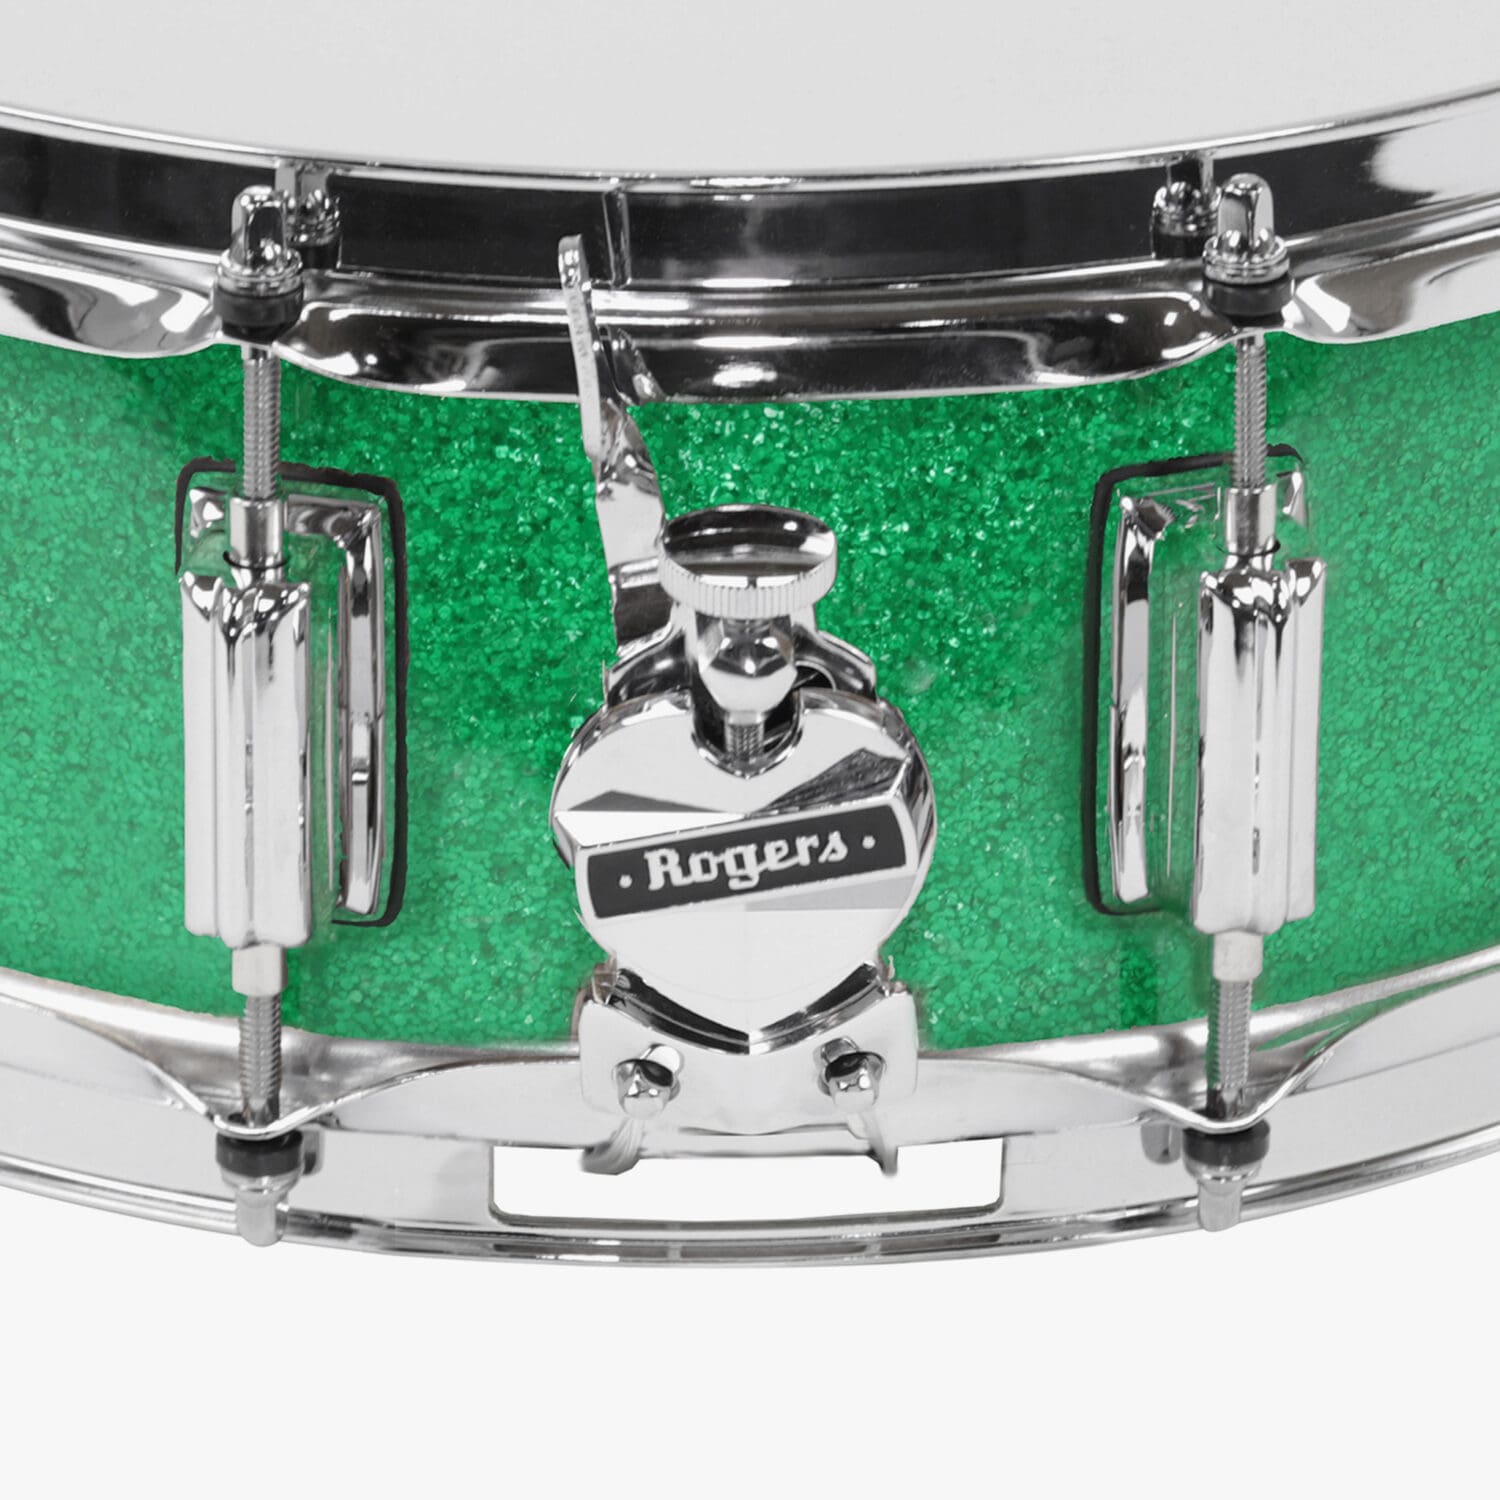 Green Sparkle Wrap SuperTen Snare Drum